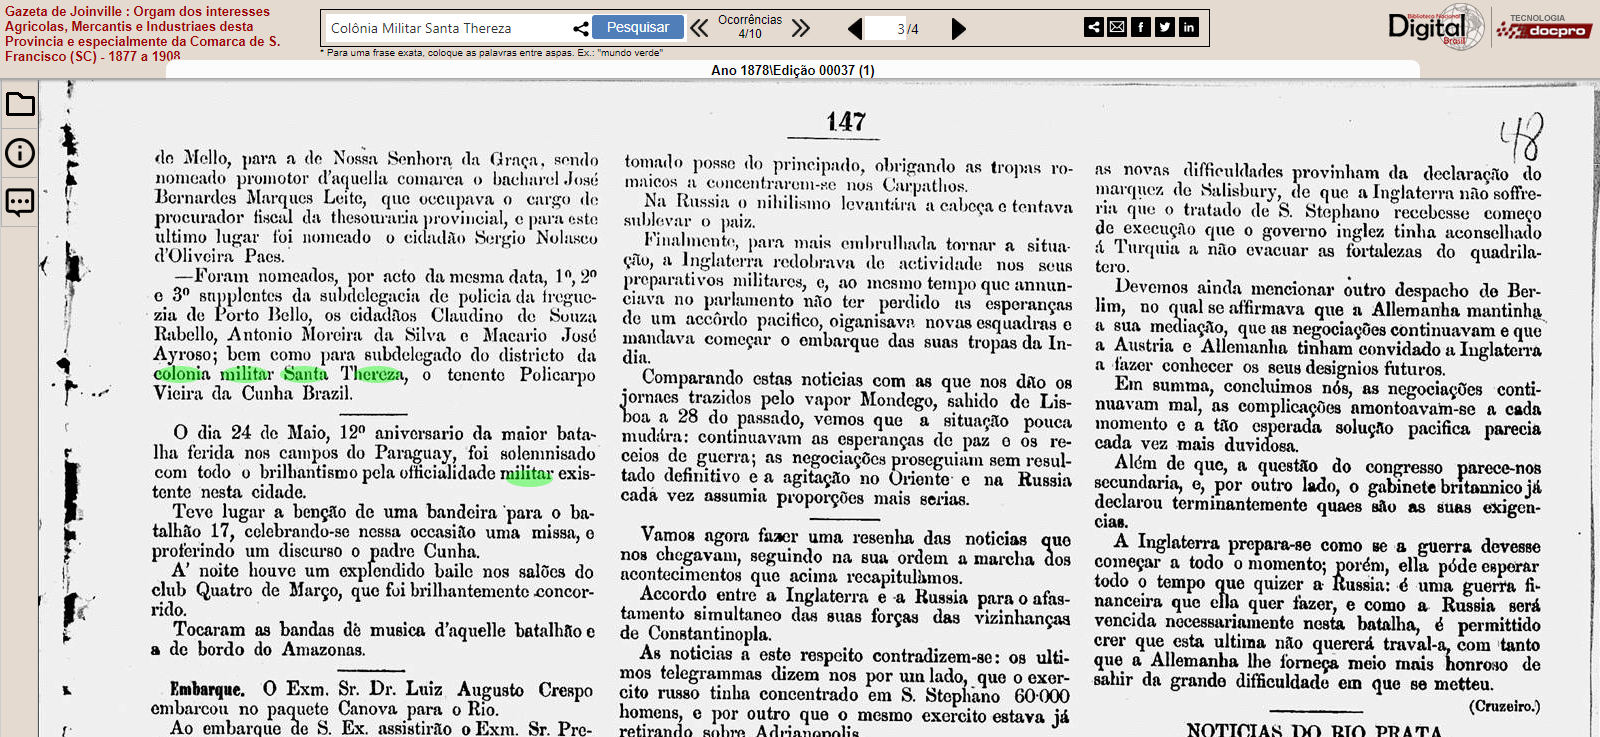 Nomeação de subdelegado para o Distrito da Colônia Militar – Gazeta de Joinville 1878 ed. 00037